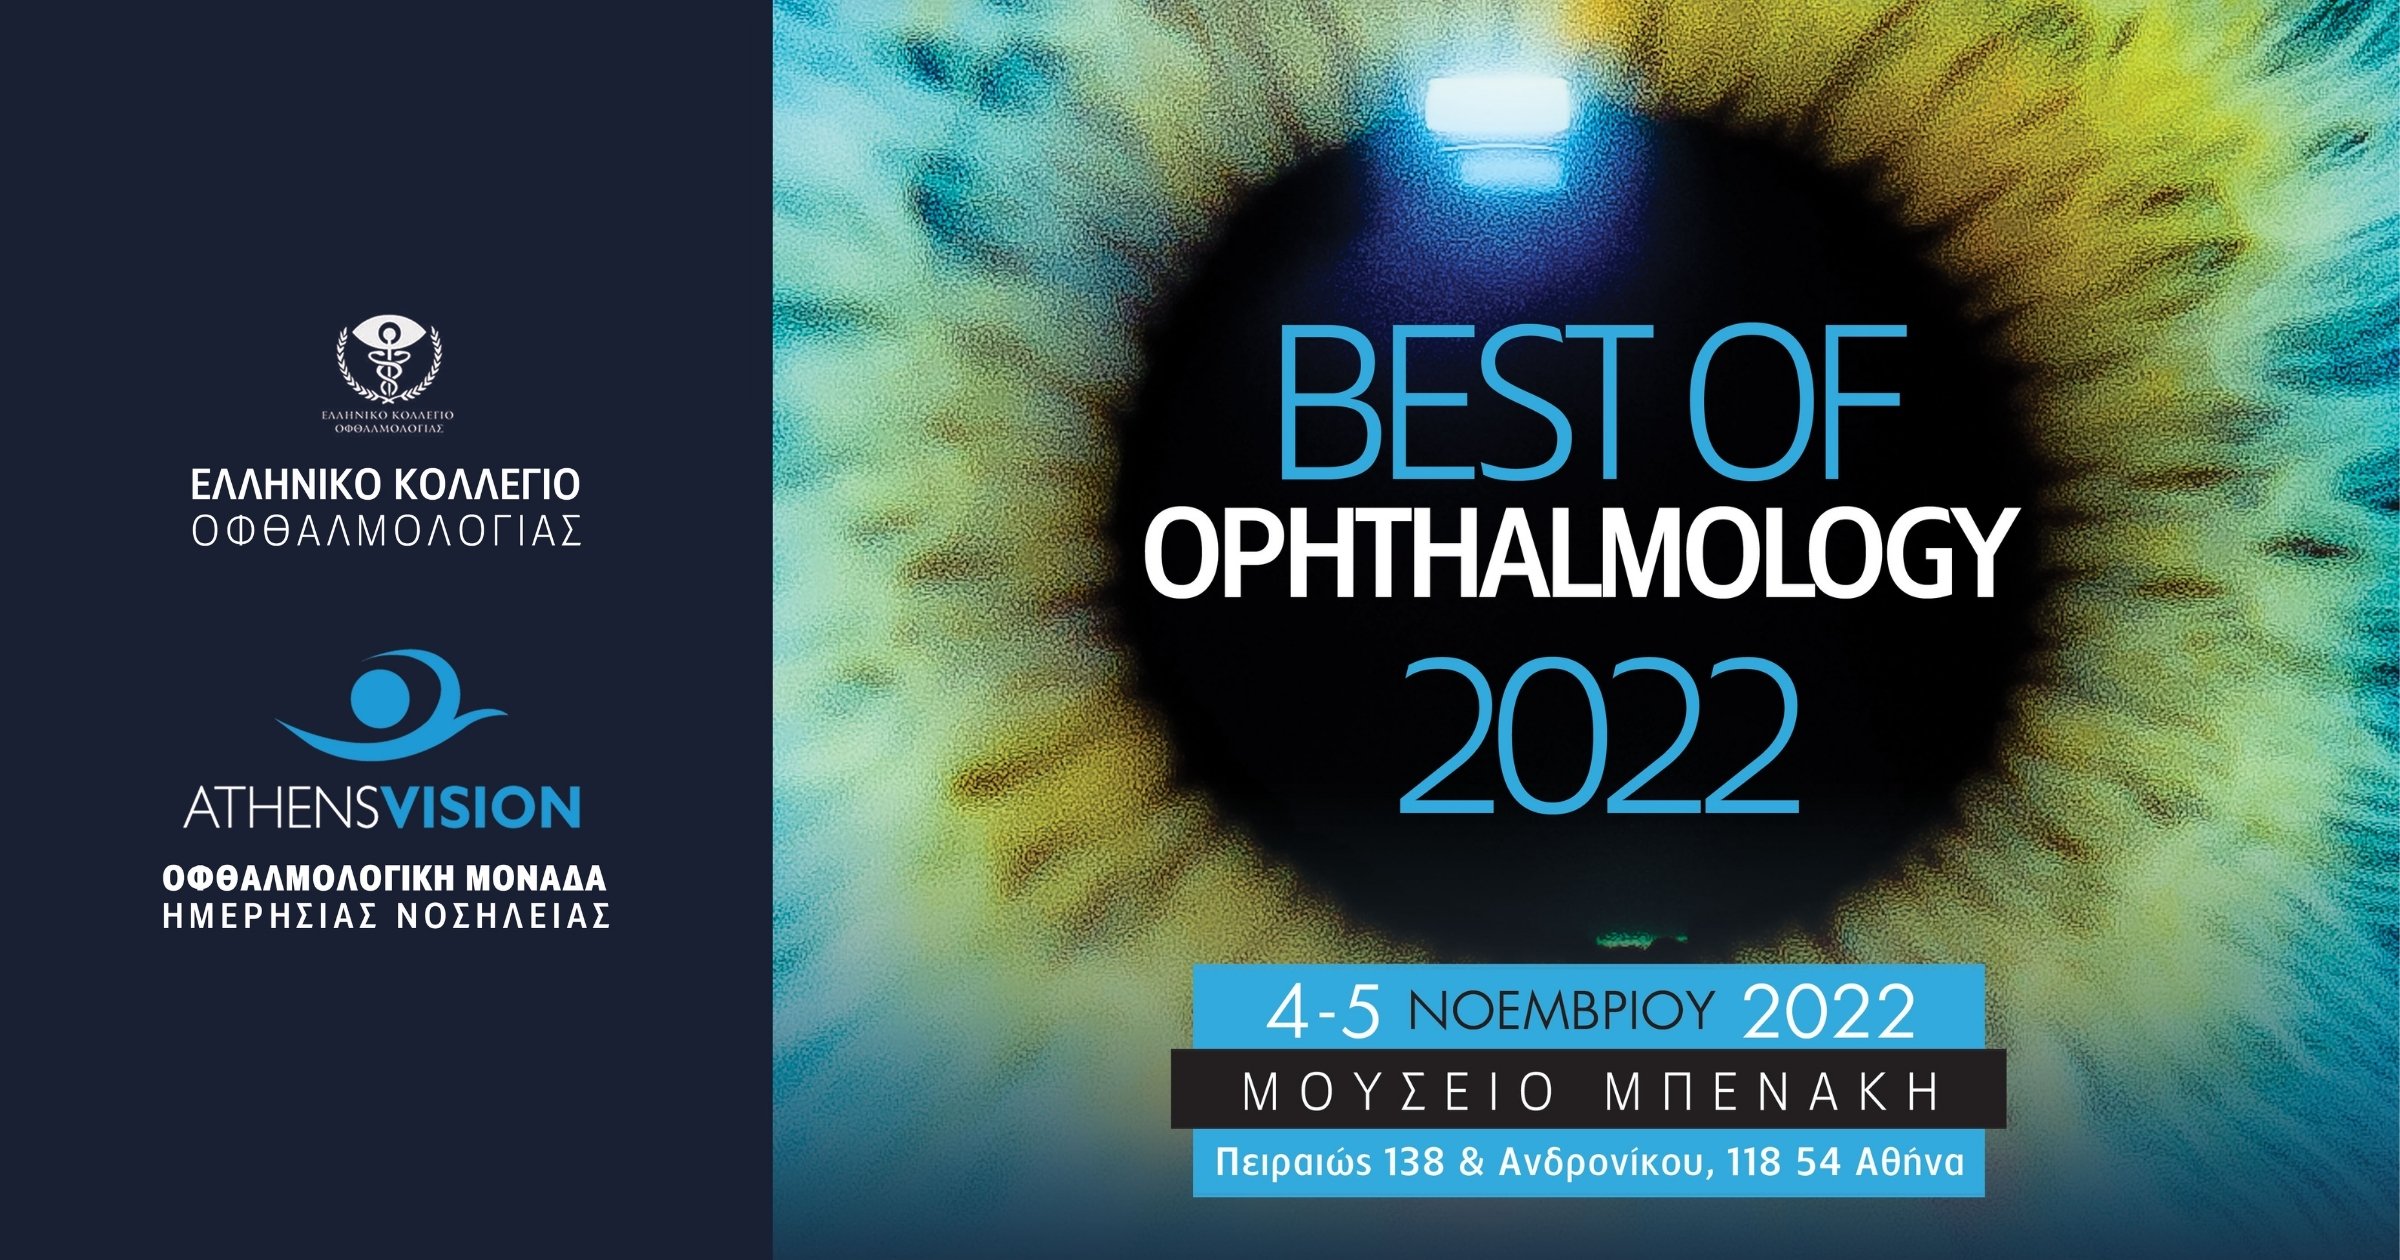 best of ophthalmology 2022 og